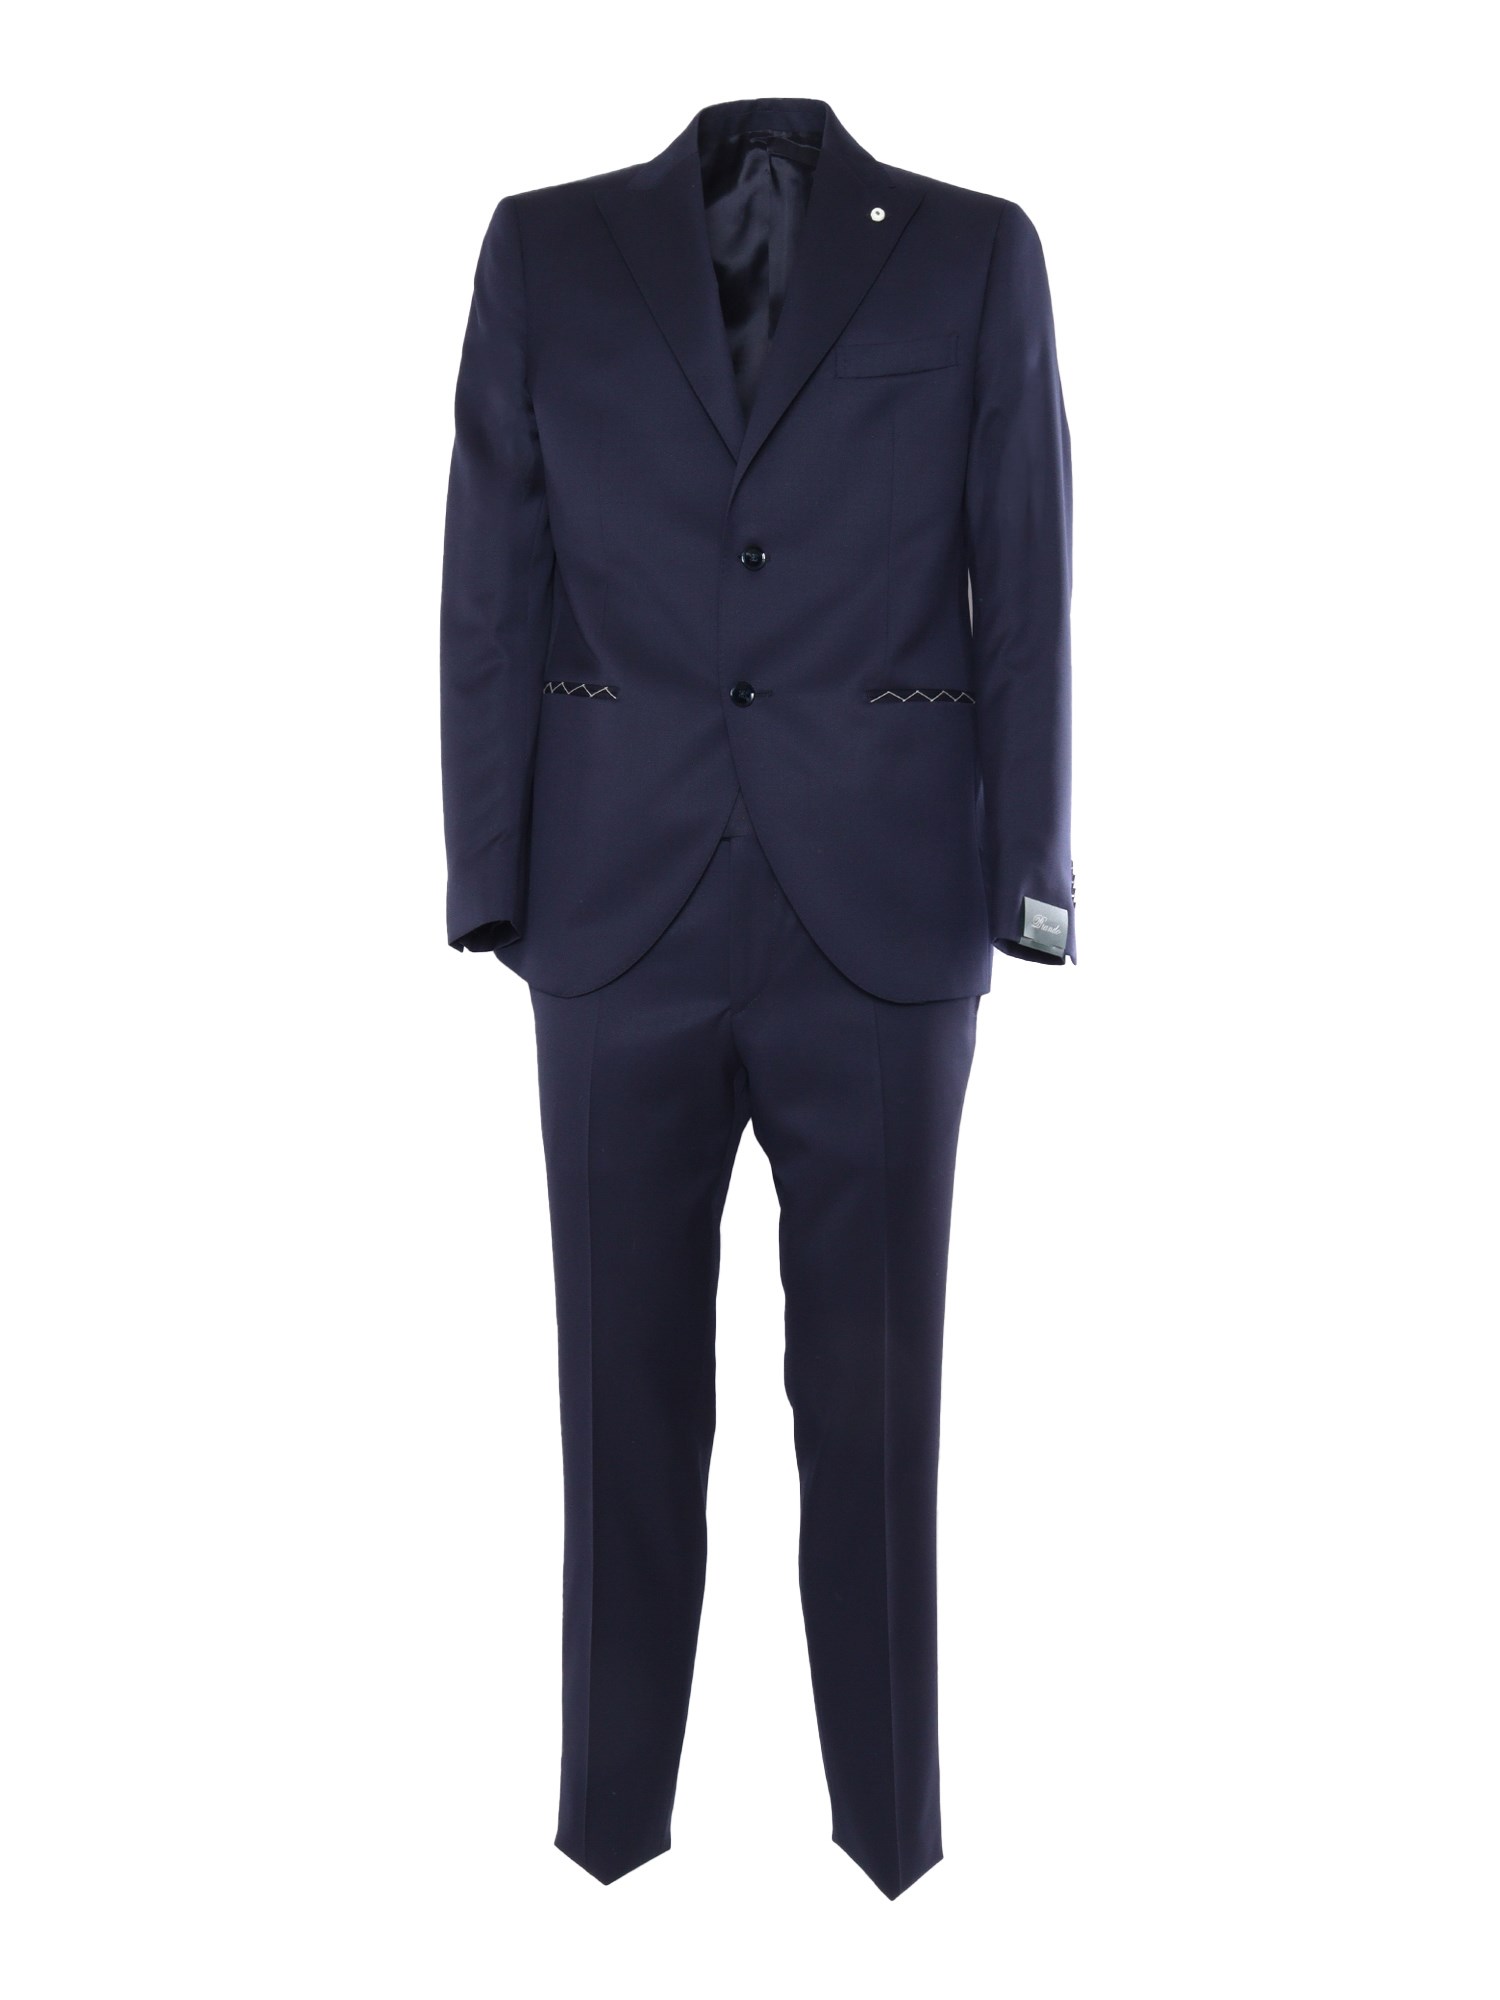 Brando-lubiam 2-pieces Elegant Suit In Blue